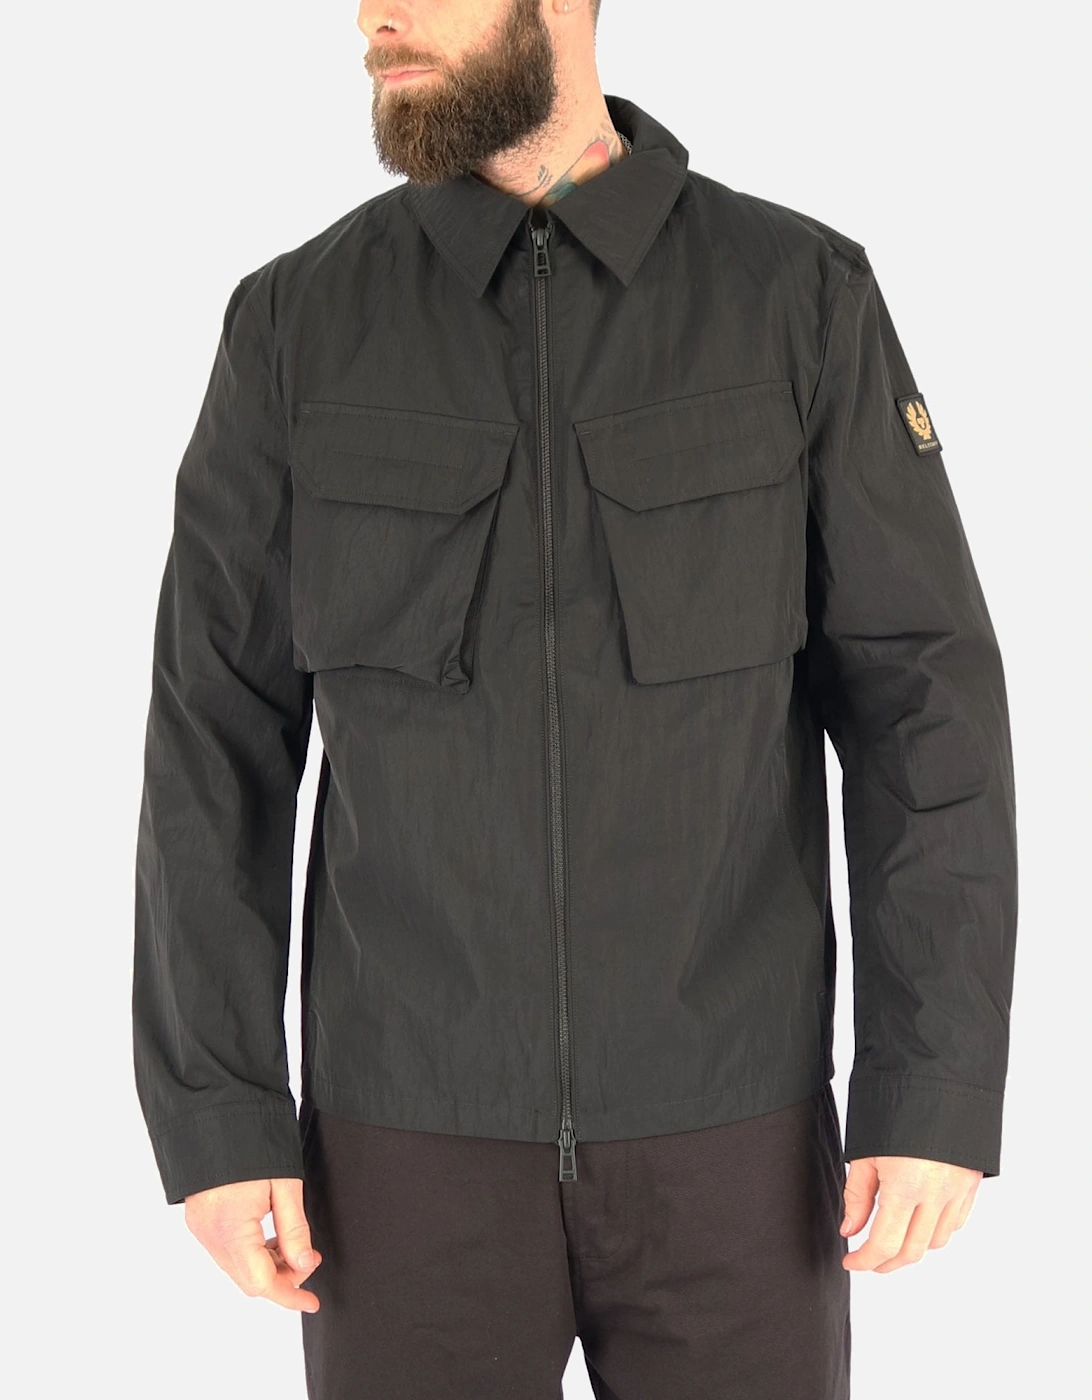 Staunton Double Pocket Black Overshirt Jacket, 5 of 4